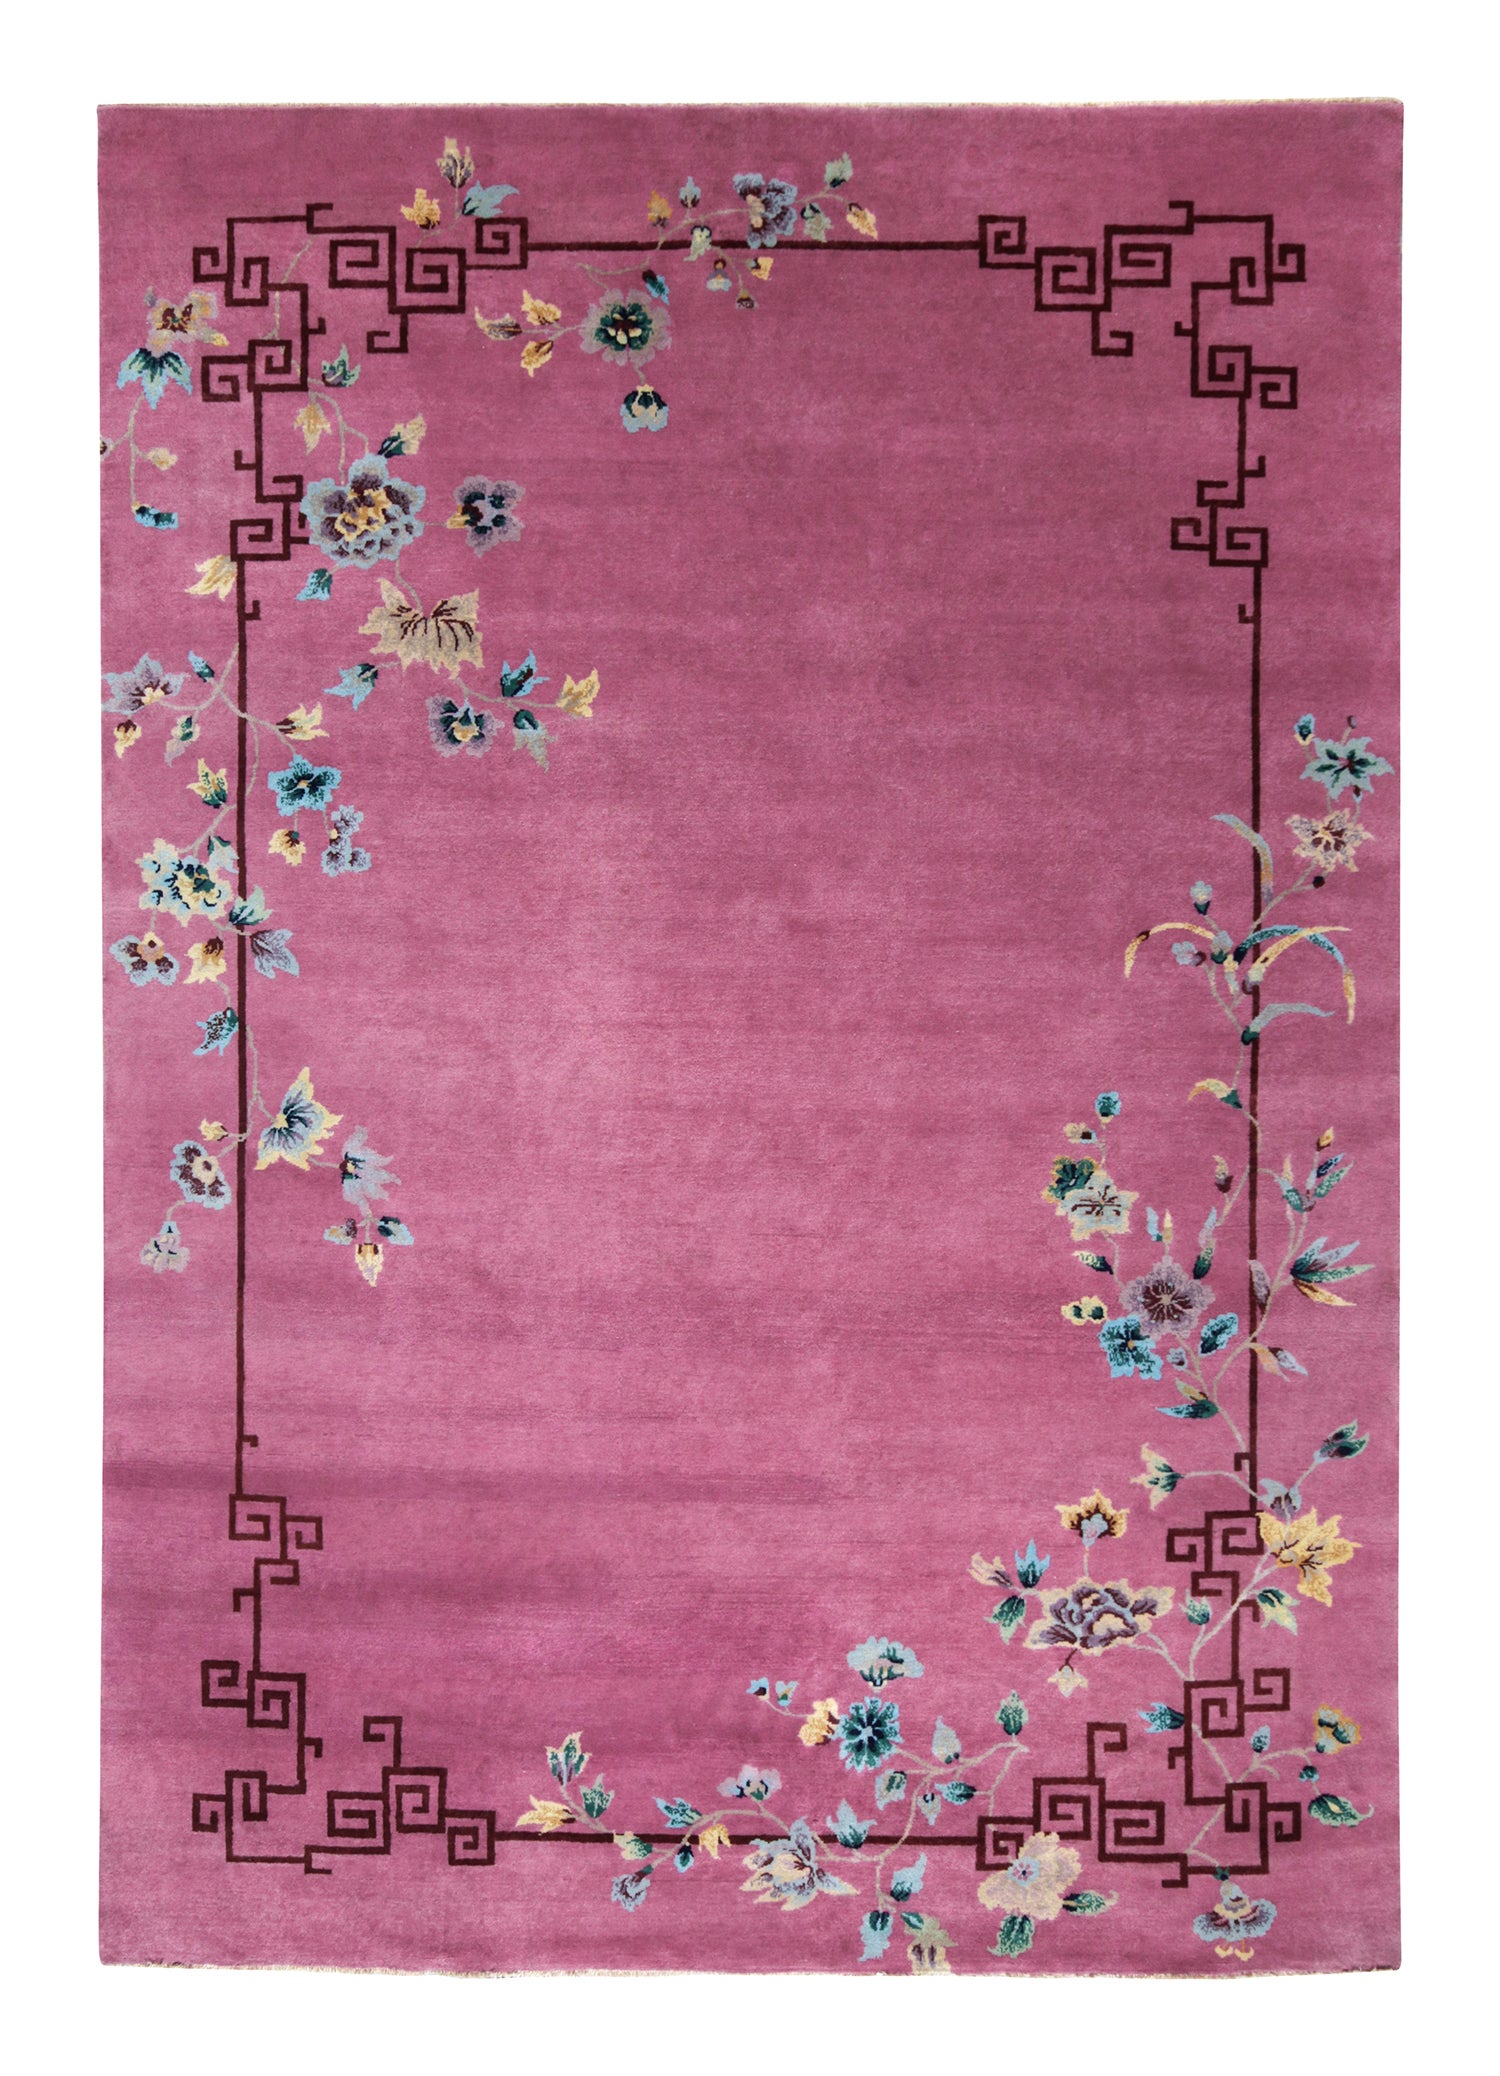 Teppich & Kelim-Teppich im chinesischen Art-déco-Stil in Rosa mit bunten Blumenmustern